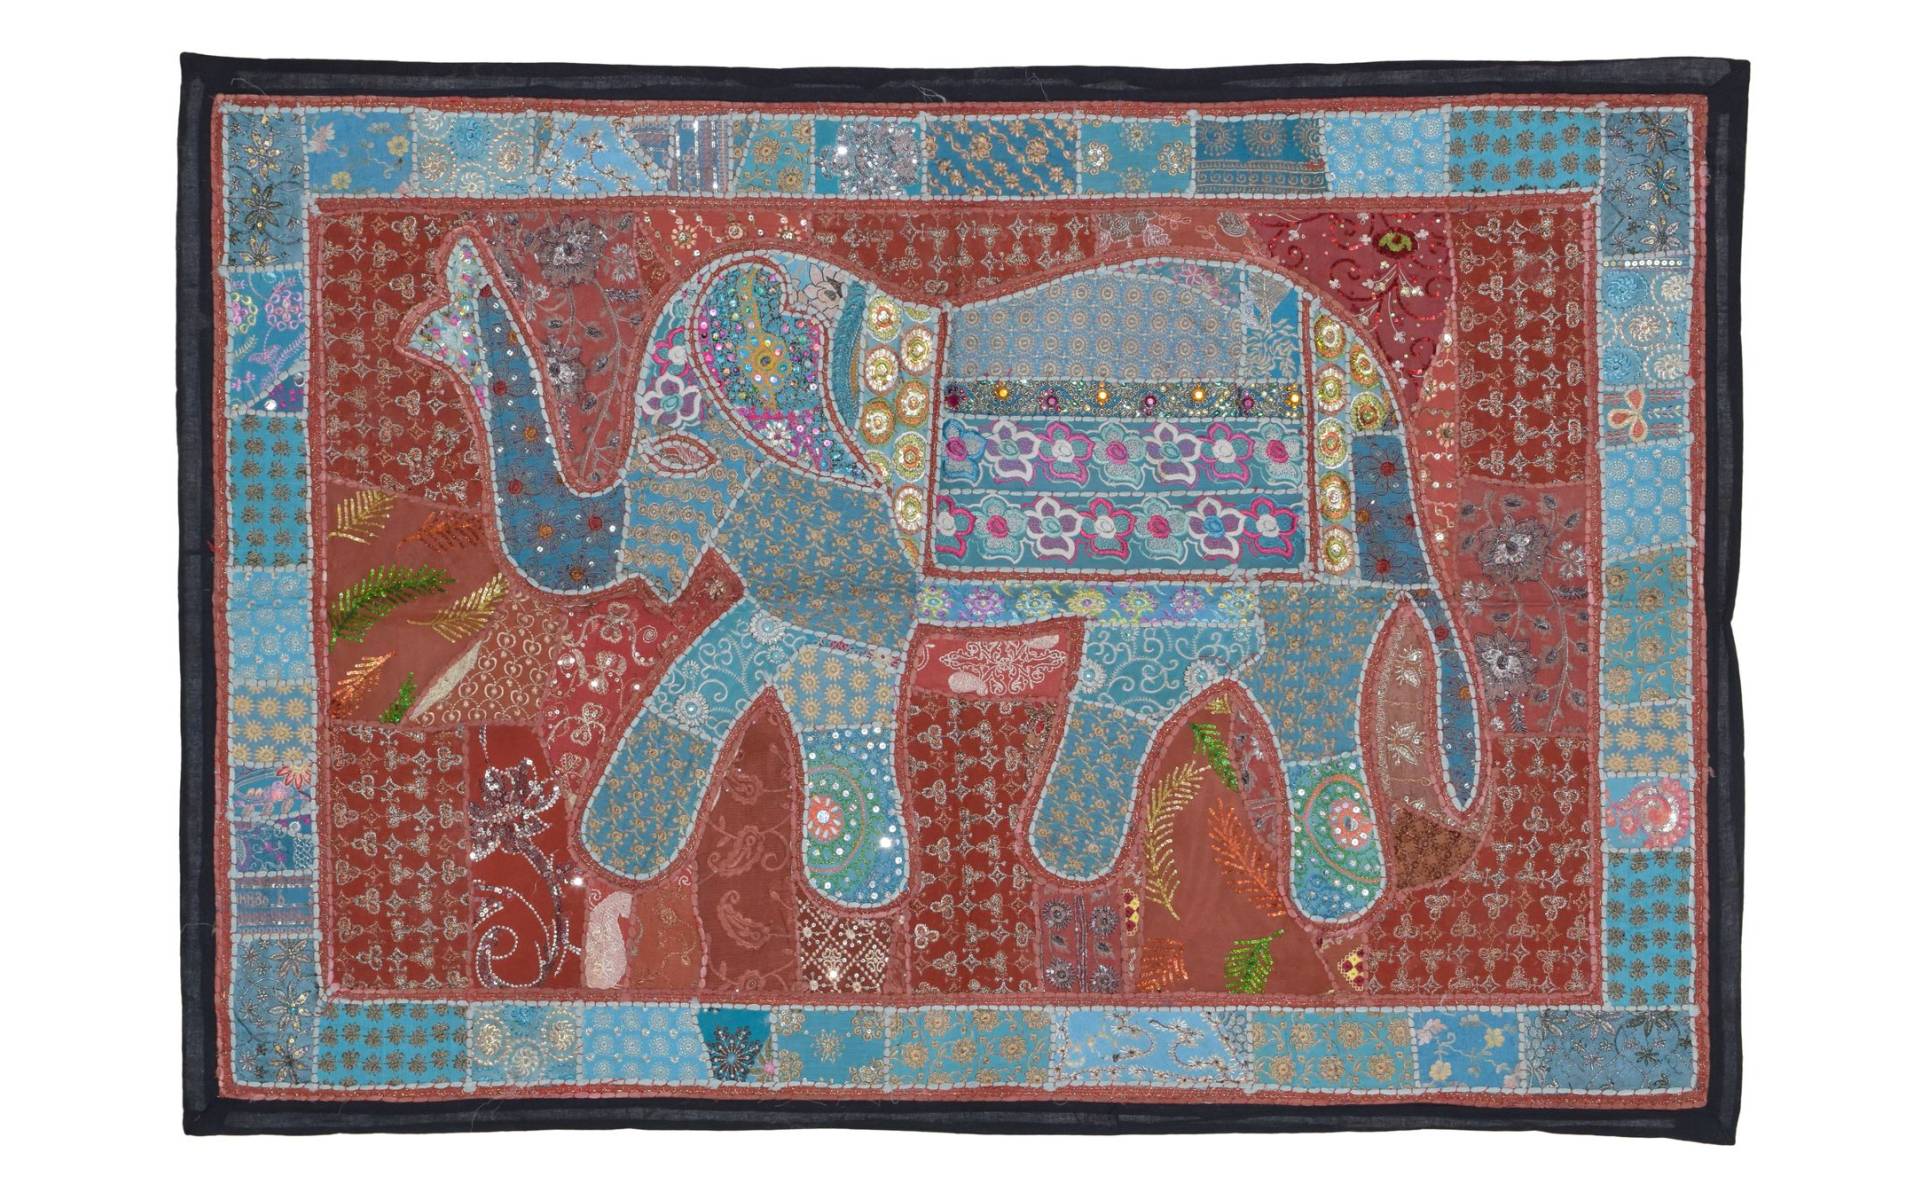 Patchworková tapiséria z Rajastanu, ručné práce, modrý slon, 152x106cm